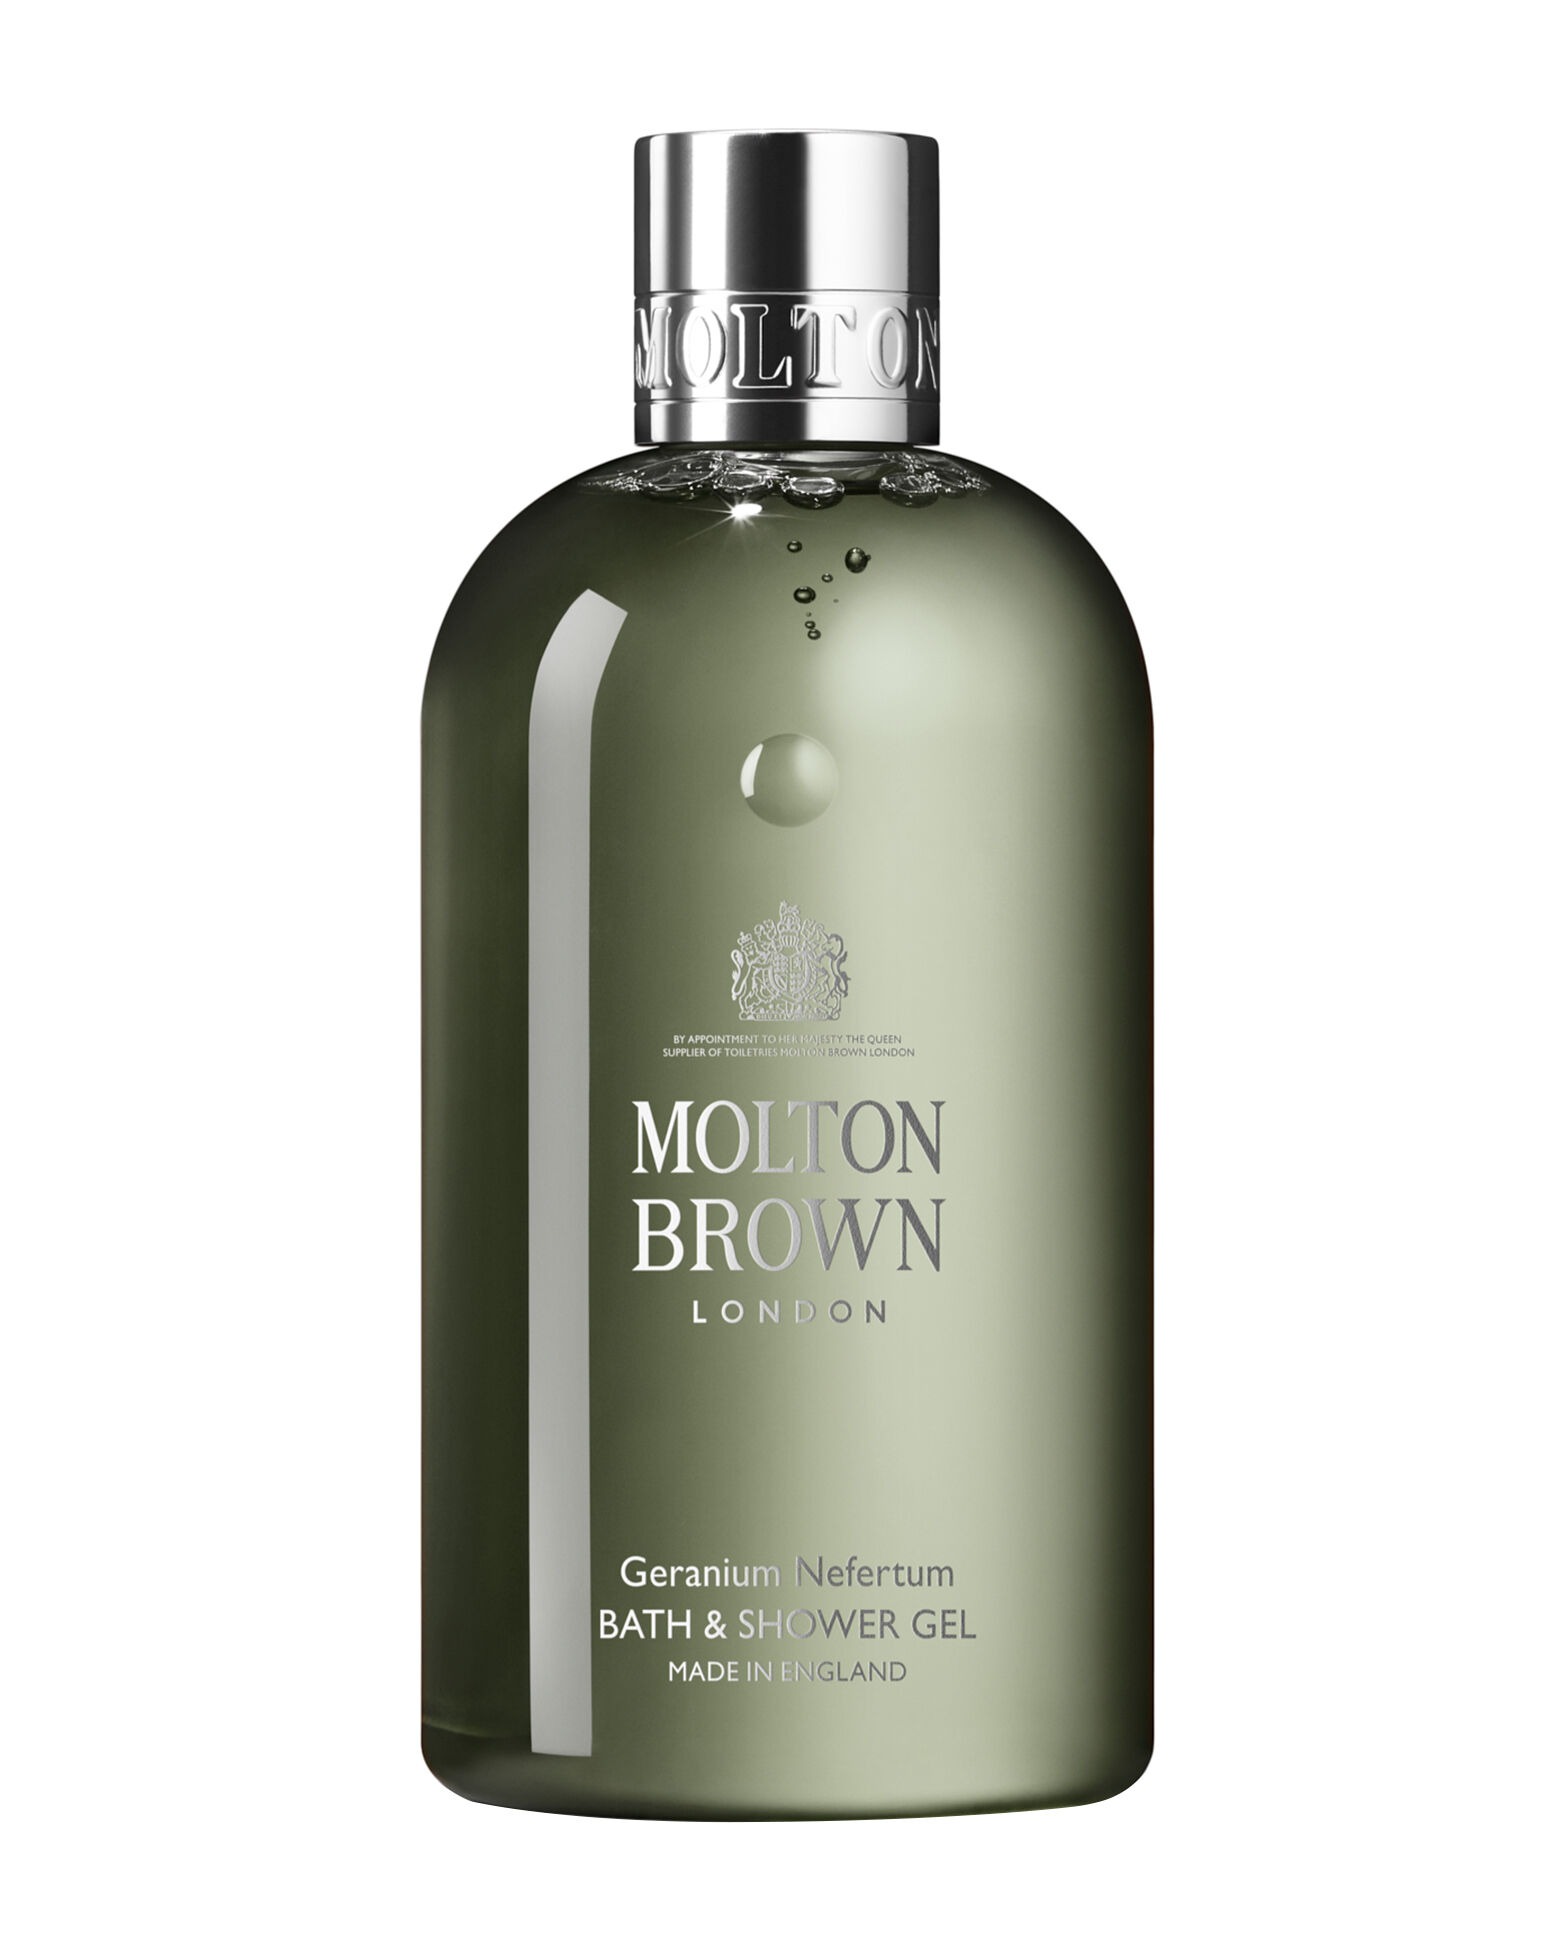 Molton Brown - Geranium Nefertum Bath & Shower Gel